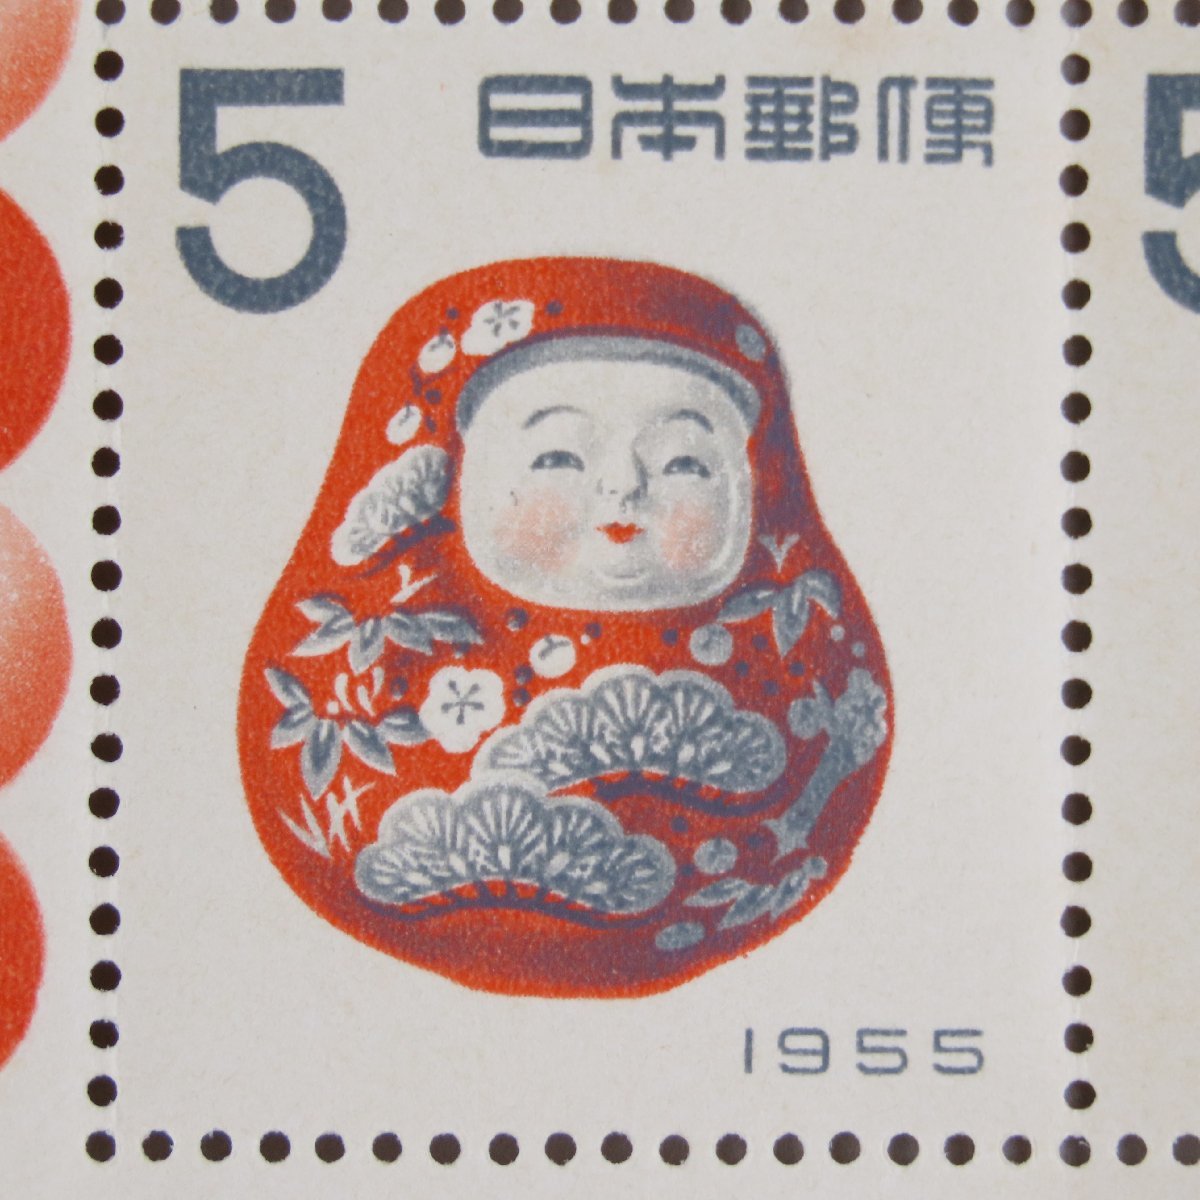 【切手2697】年賀切手 昭和30年 「起上り」小型シート 5円4面1シート_画像1